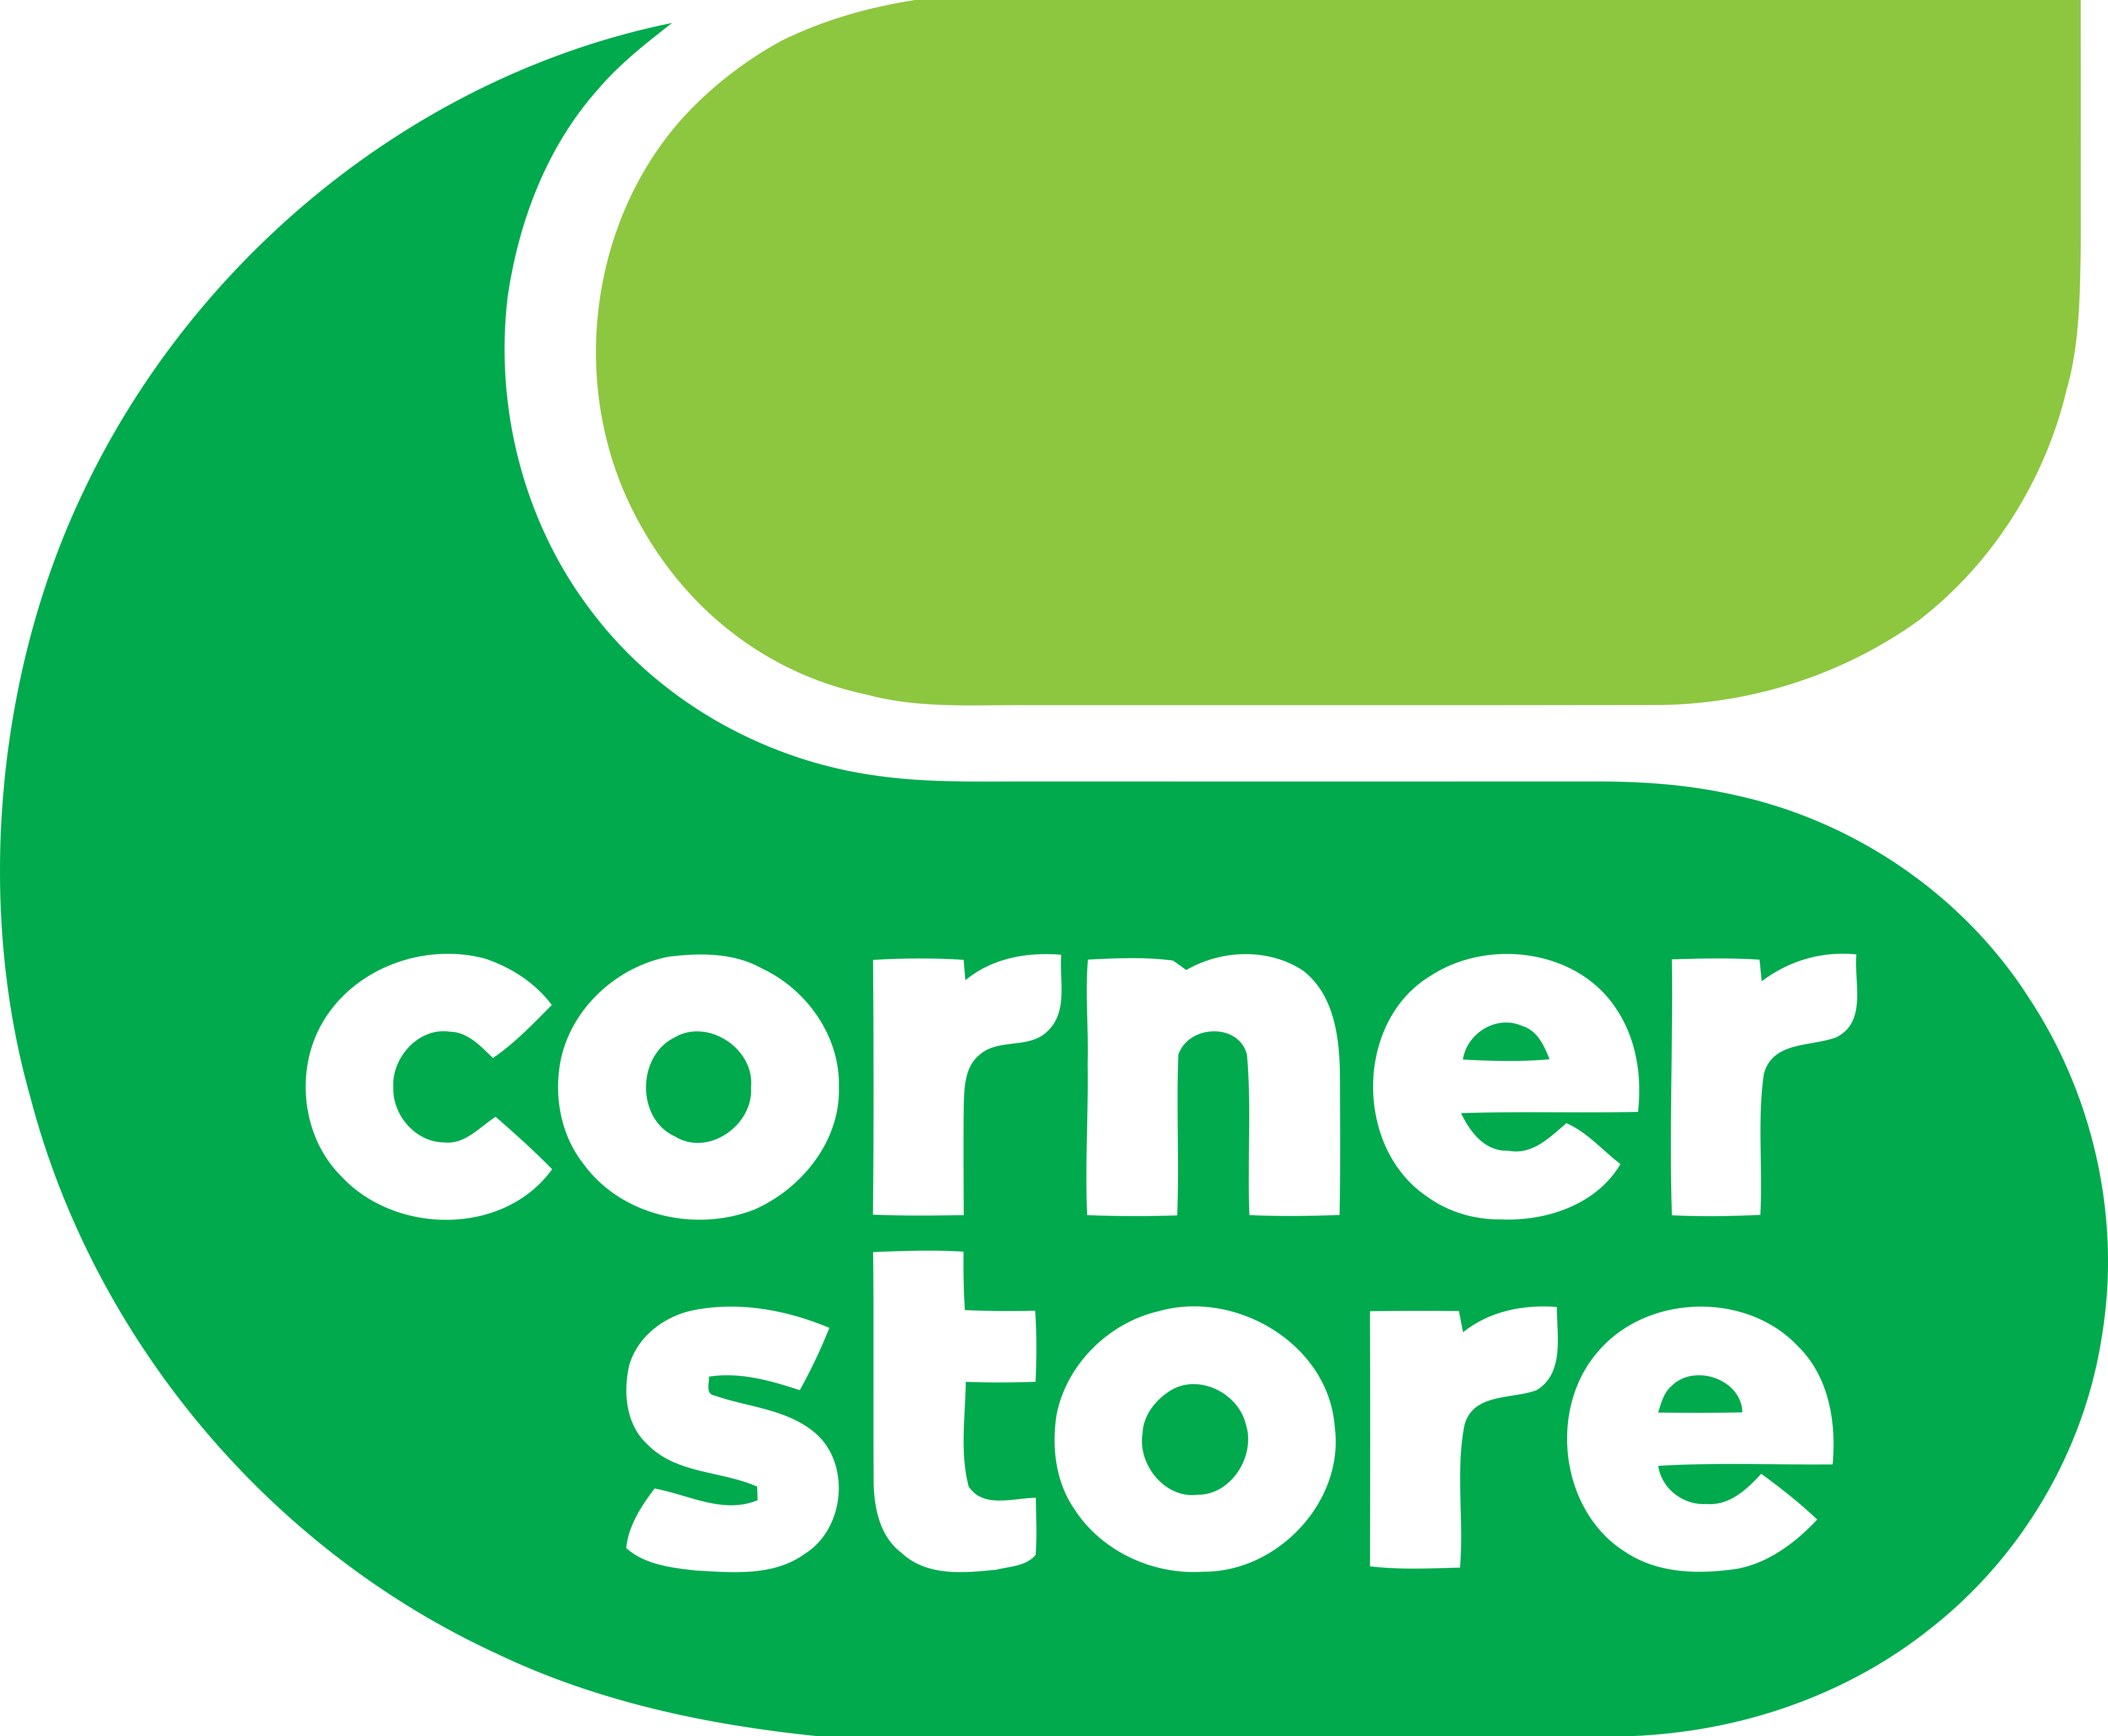 Store лого. О! Стор логотип. Логотип stor. X Store логотип. Corner store